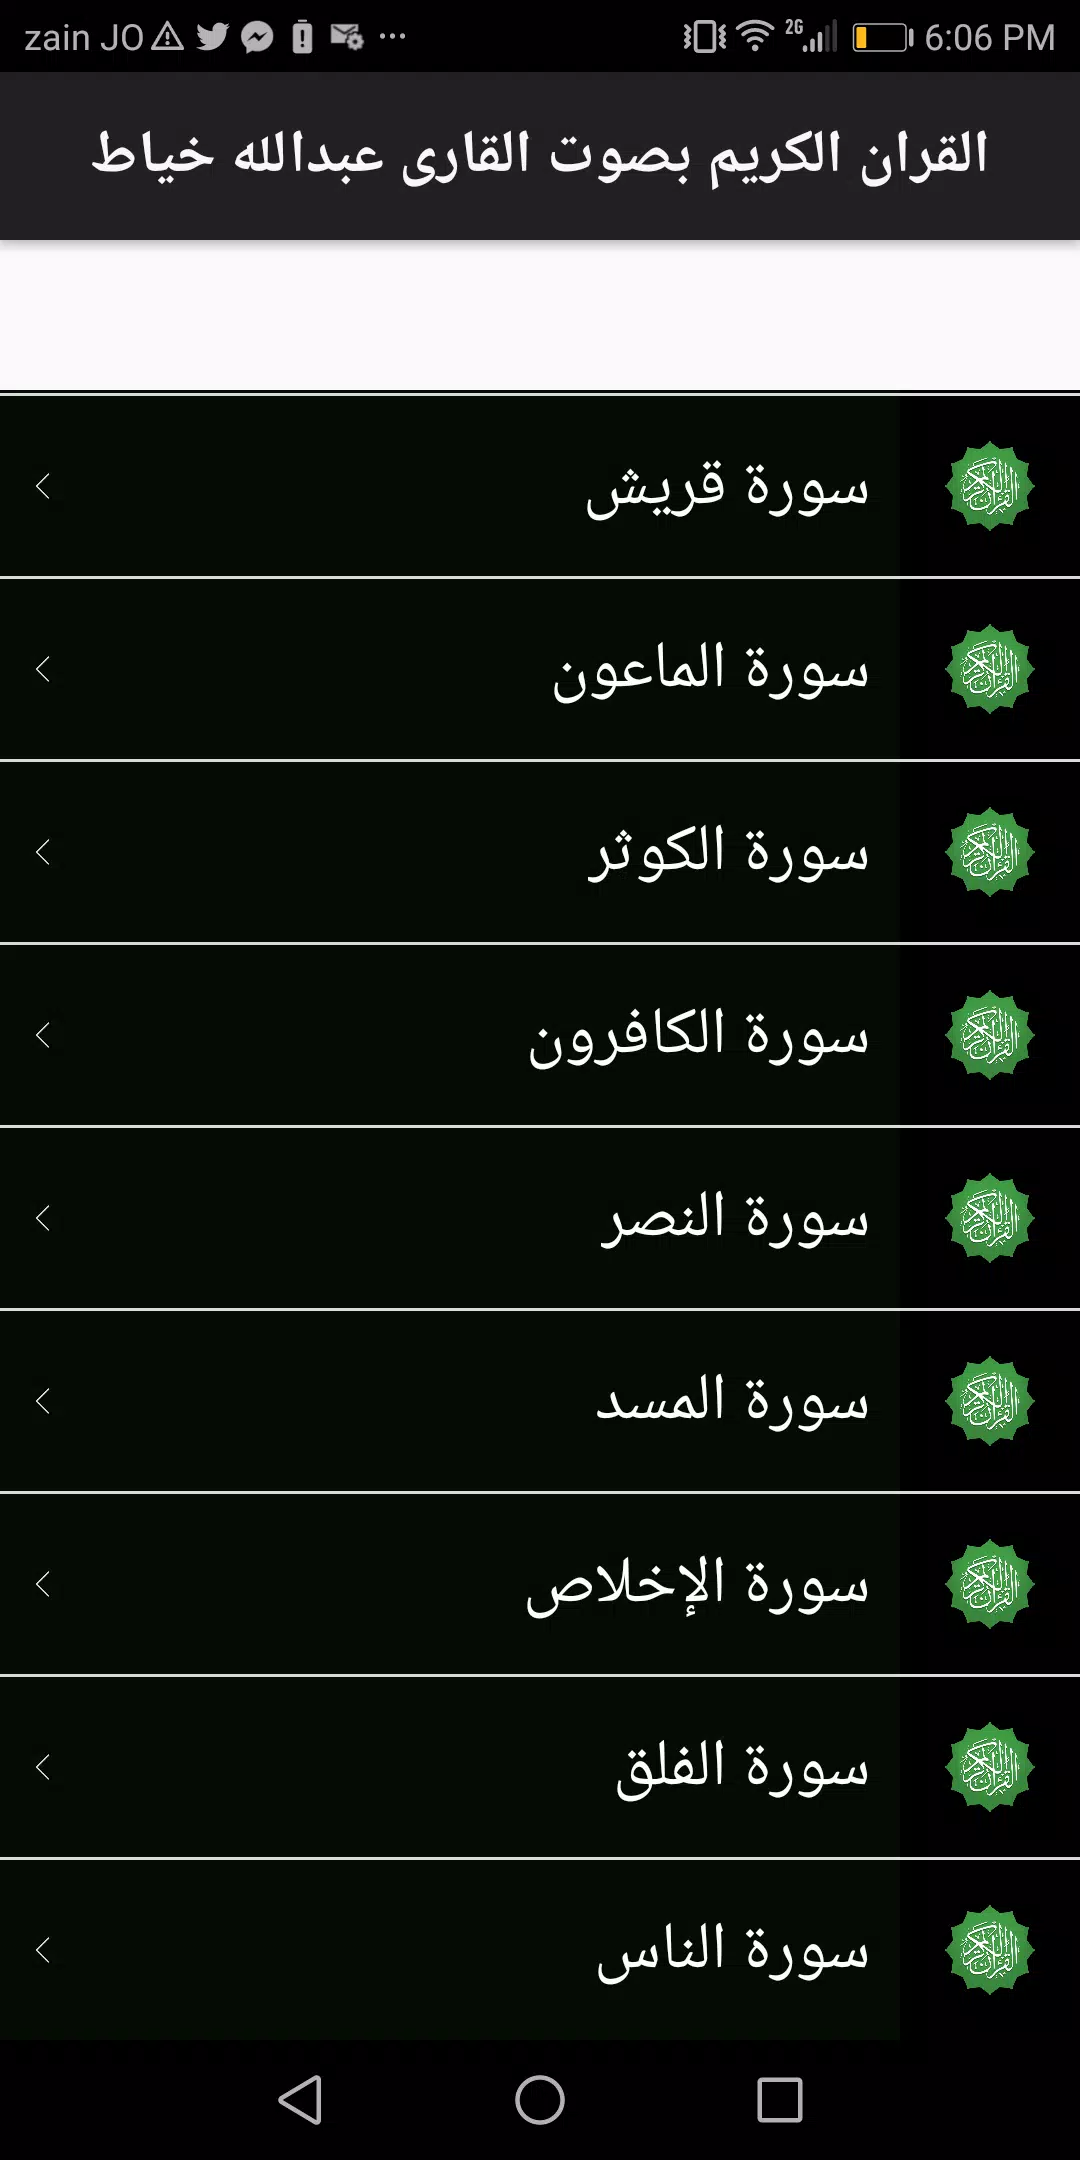 القرآن الكريم - المصحف الالكتروني جامعة الملك سعود APK pour Android  Télécharger